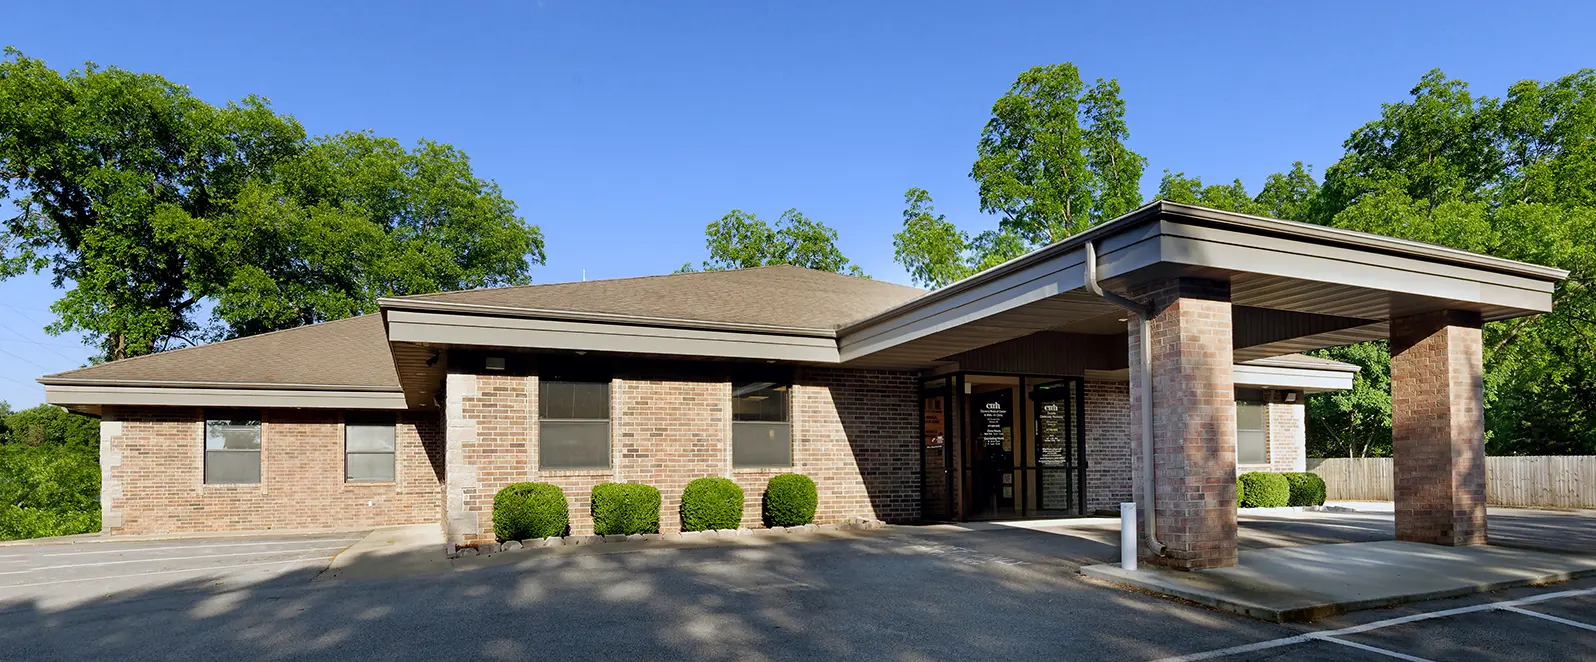 Osceola Rehabilitation Clinic building exterior